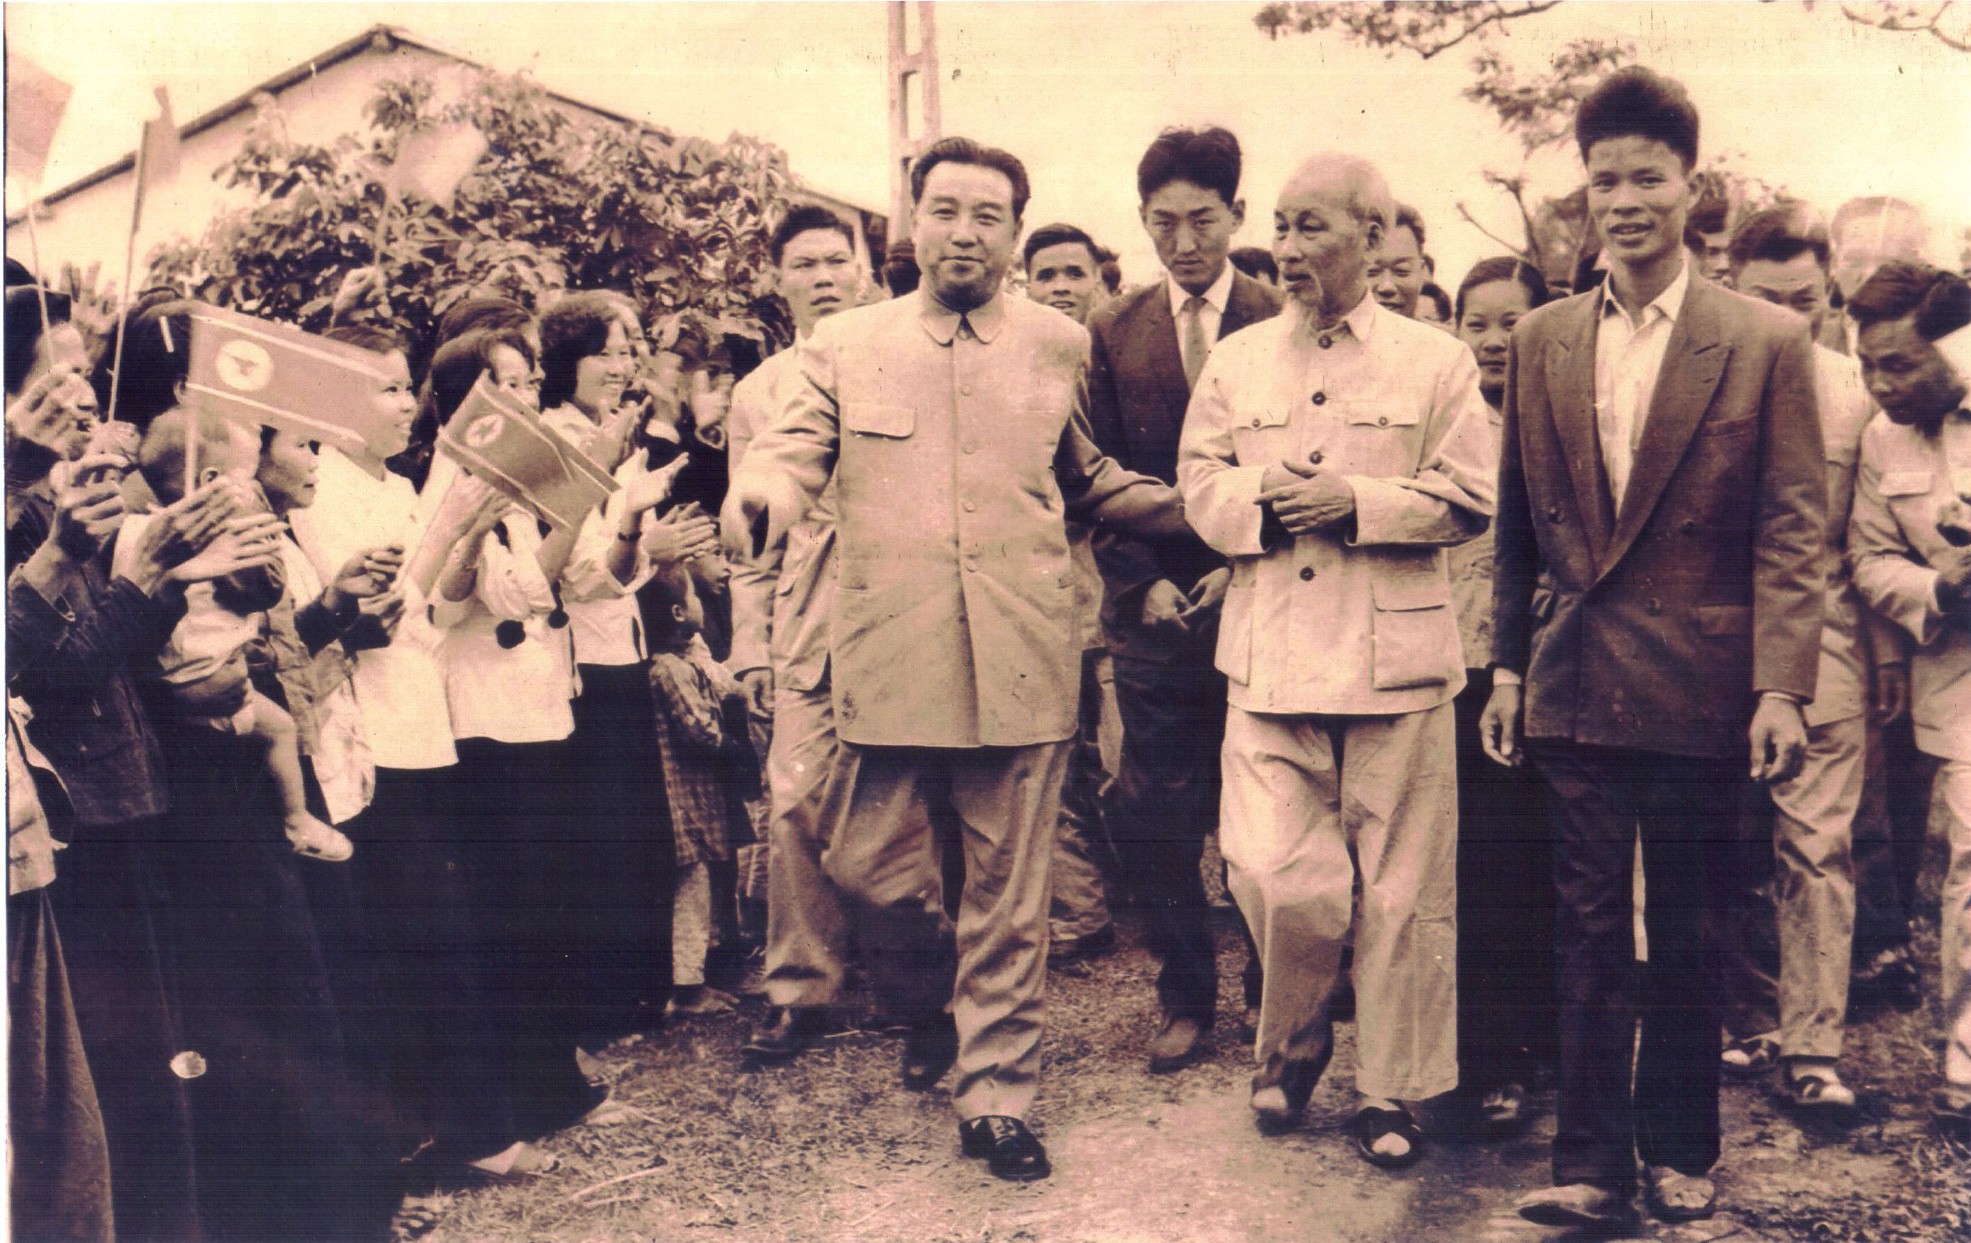 Nhà lãnh đạo tài ba Chủ tịch Kim Nhật Thành đã góp phần quan trọng trong việc xây dựng và phát triển kinh tế Việt Nam. Với tầm nhìn xa trông, ông đã làm nên những thành tựu vượt bậc, đưa đất nước phát triển. Để hiểu thêm về những đóng góp của ông, hãy xem những hình ảnh liên quan đến Chủ tịch Kim Nhật Thành.